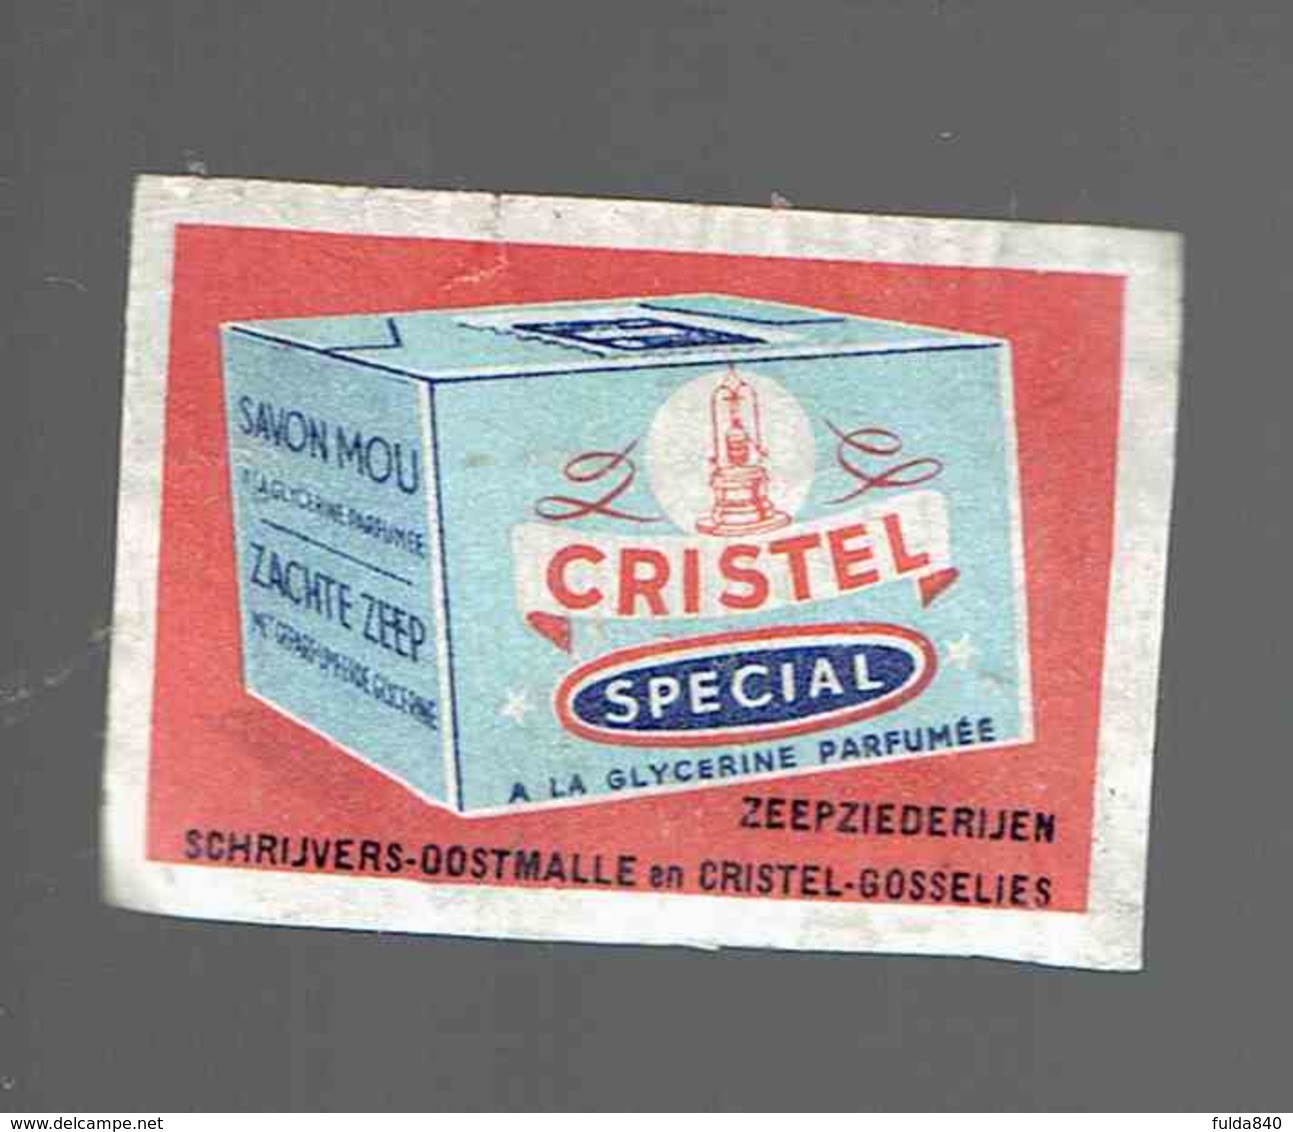 *CRISTEL SPECIAL* GOSSELIES* ." étiquette D'Allumette / Made In Belgium" - Boites D'allumettes - Etiquettes